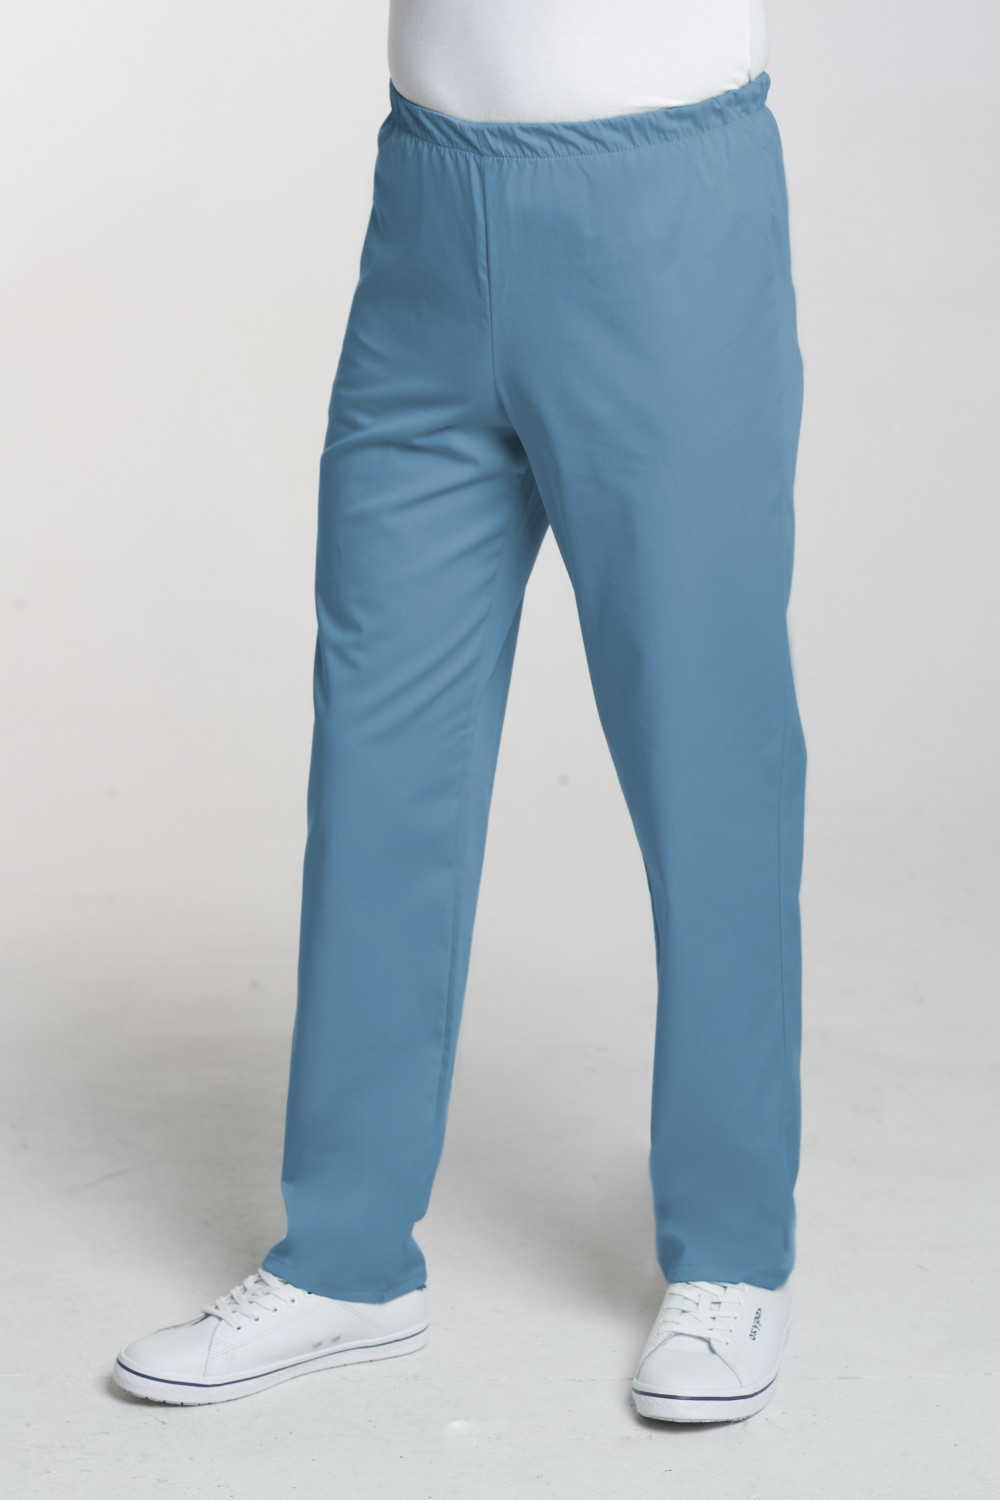 M-075C Spodnie męskie medyczne lekarskie kolor turkus